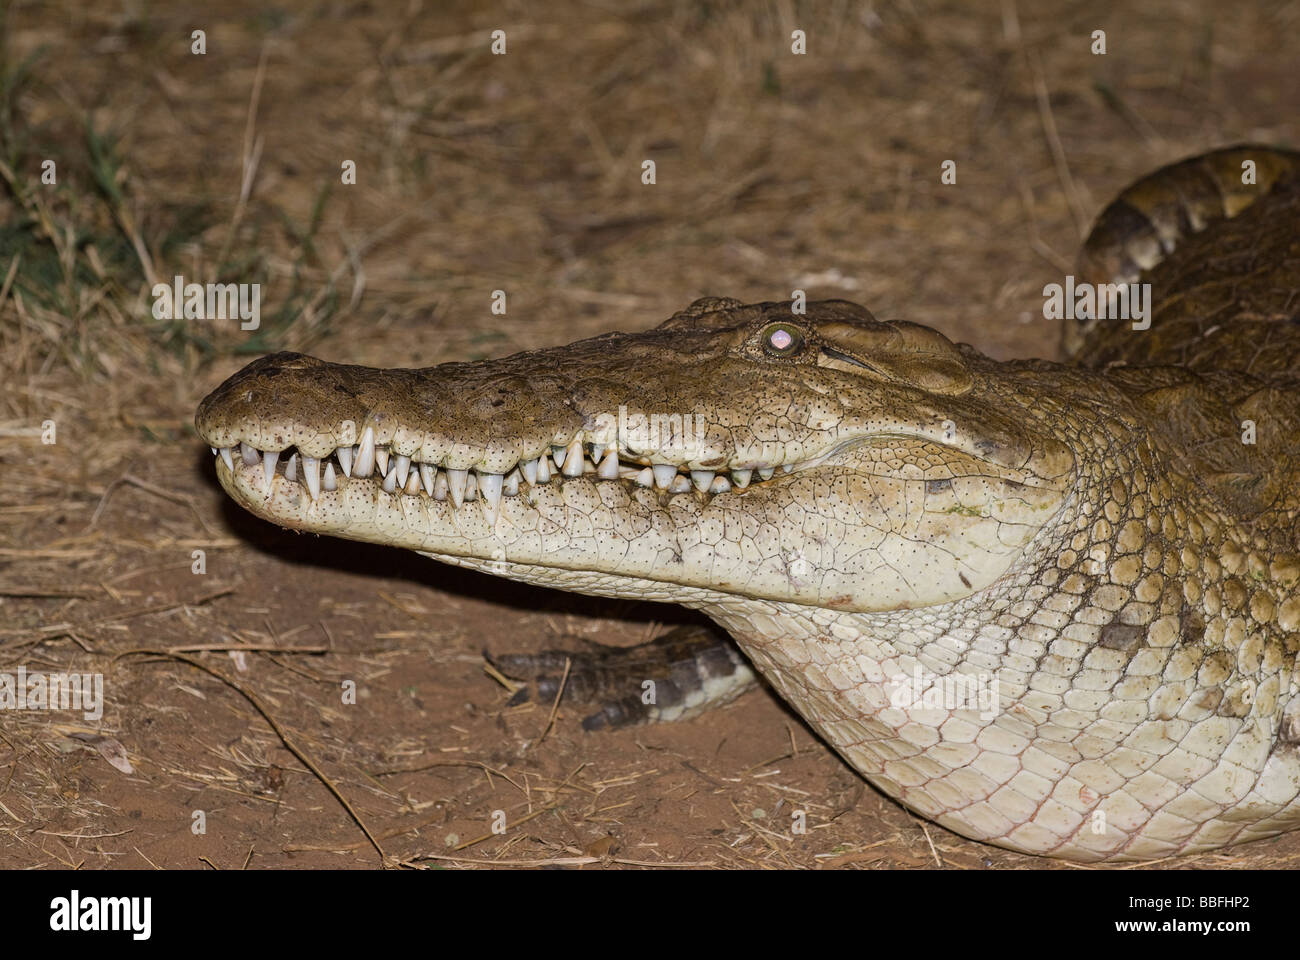 Crocodile du Nil Crocodylus niloticus noctual à l'alimentation de la réserve nationale de Samburu Serena Lodge Kenya Afrique de l'Est Banque D'Images